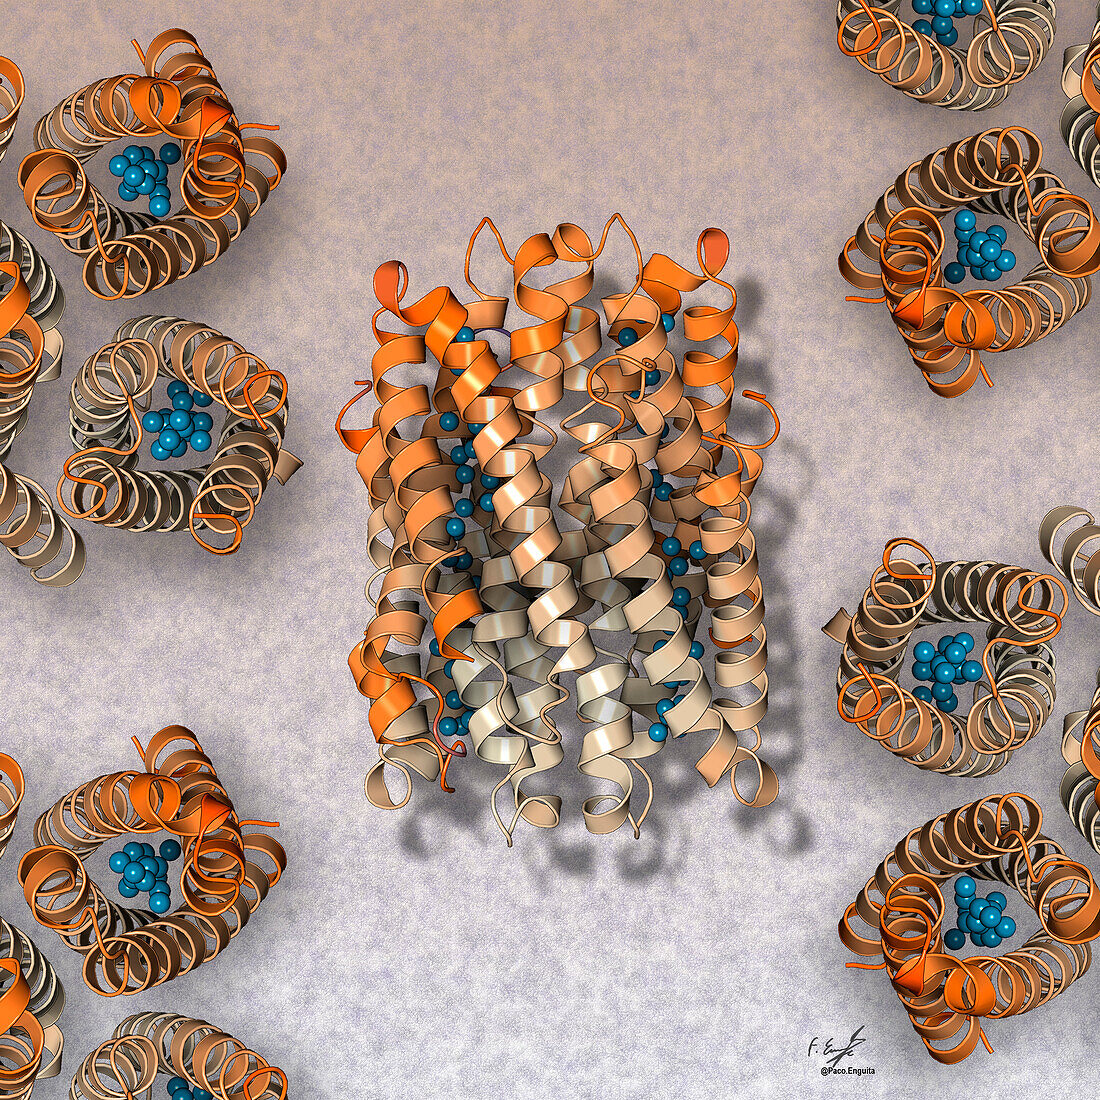 Copper storage proteins, illustration